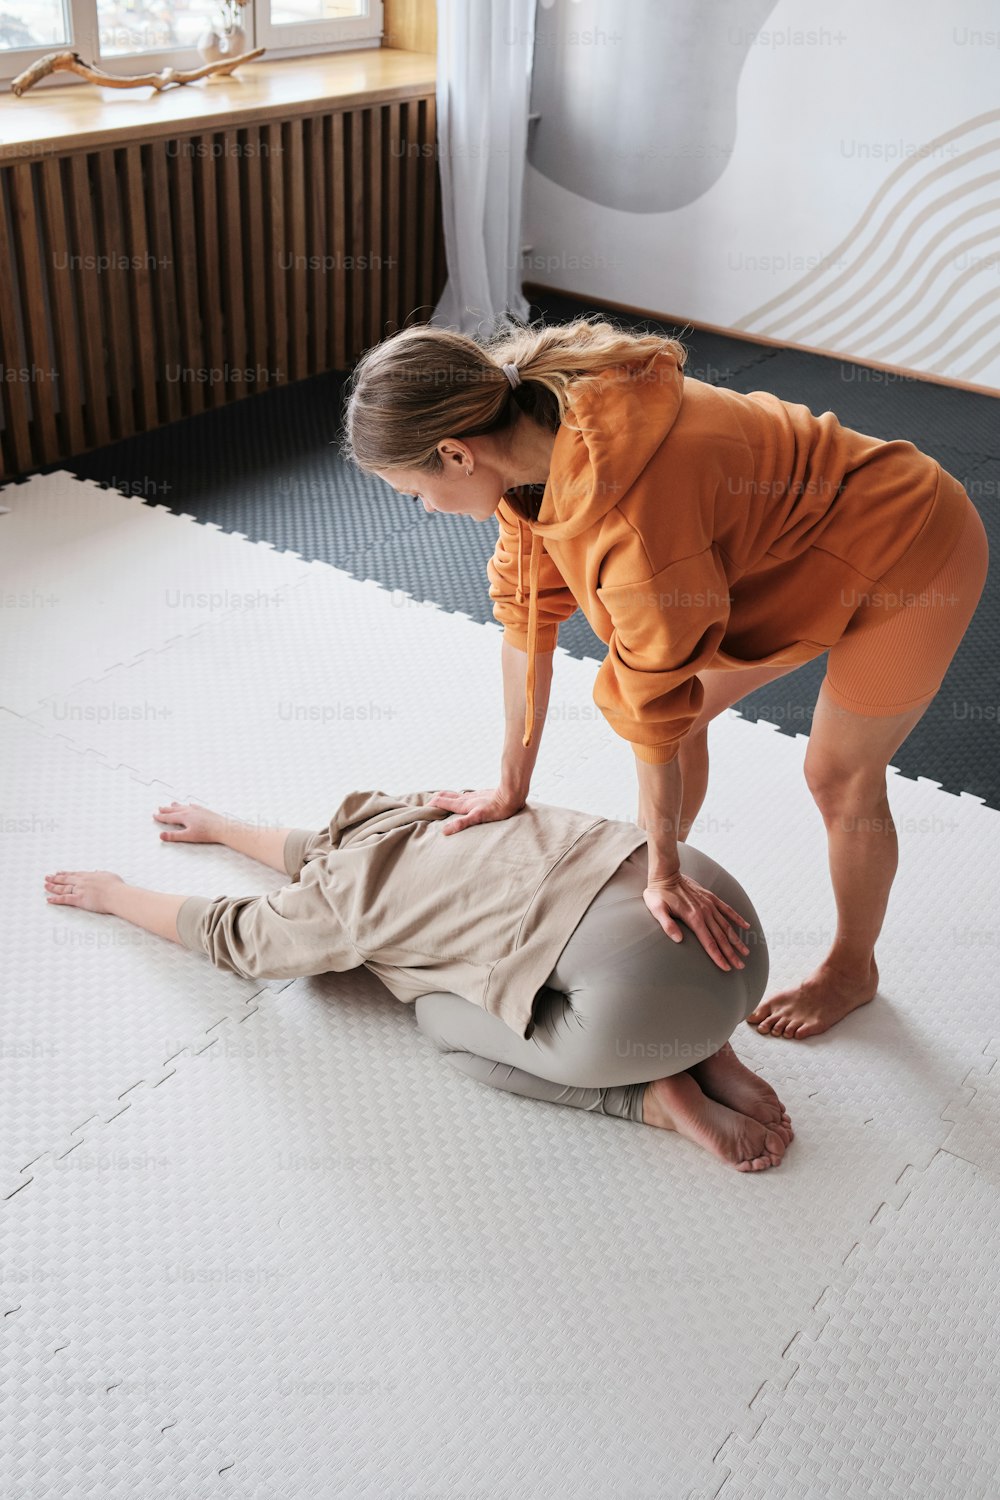 Eine Frau hilft einem Mann auf einer Matratze